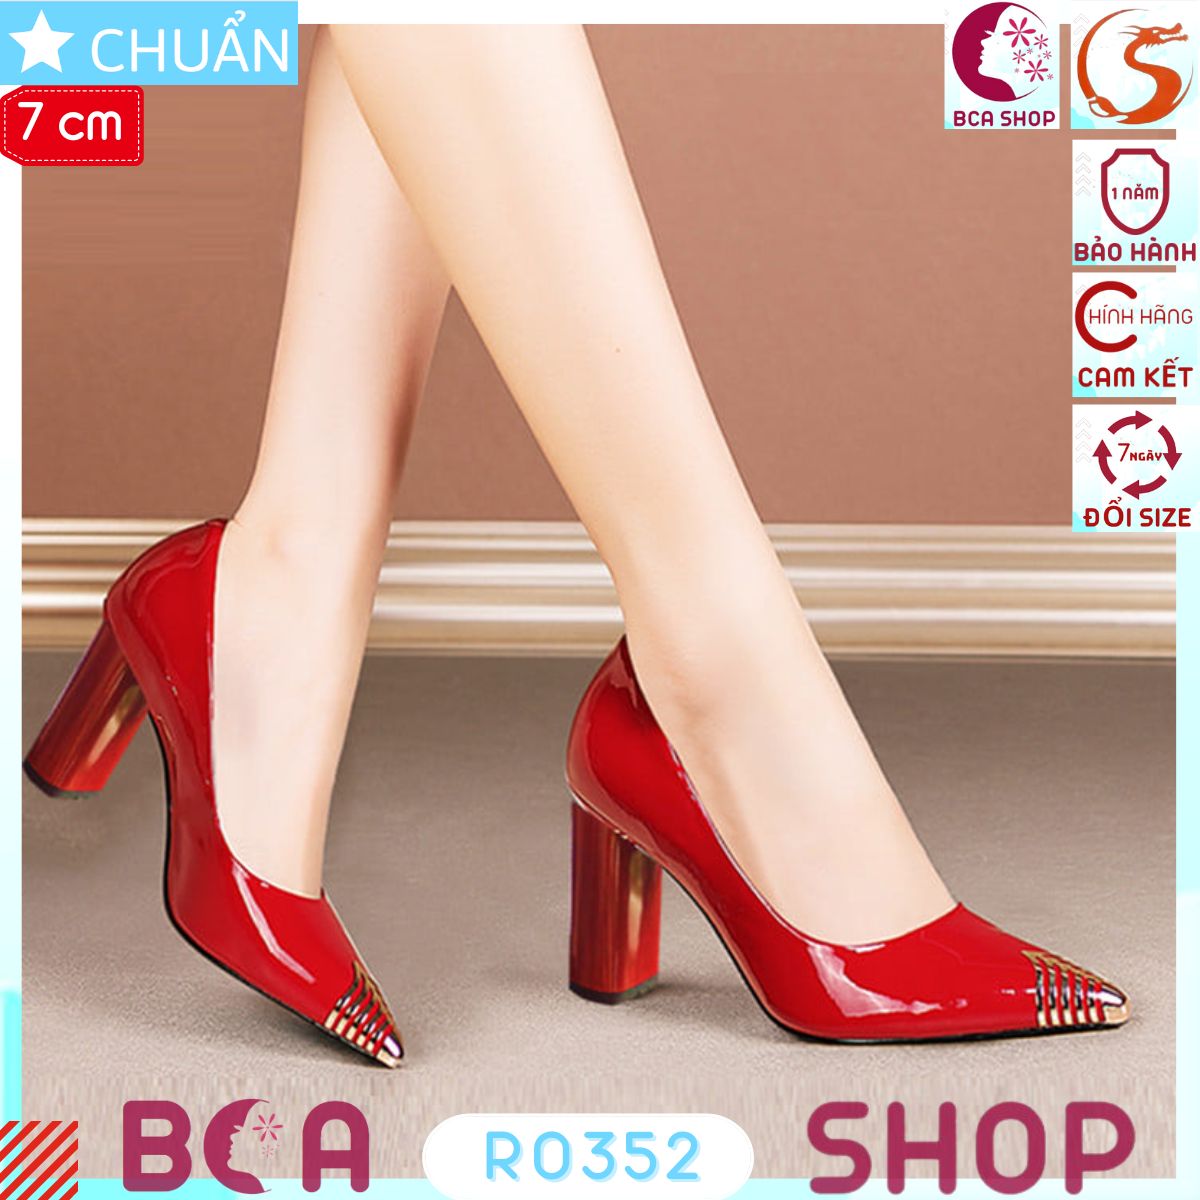 Giày cao gót nữ màu đỏ 7p RO352 ROSATA tại BCASHOP mũi nhọn được bọc kim loại mạ vàng sang trọng và đẳng cấp